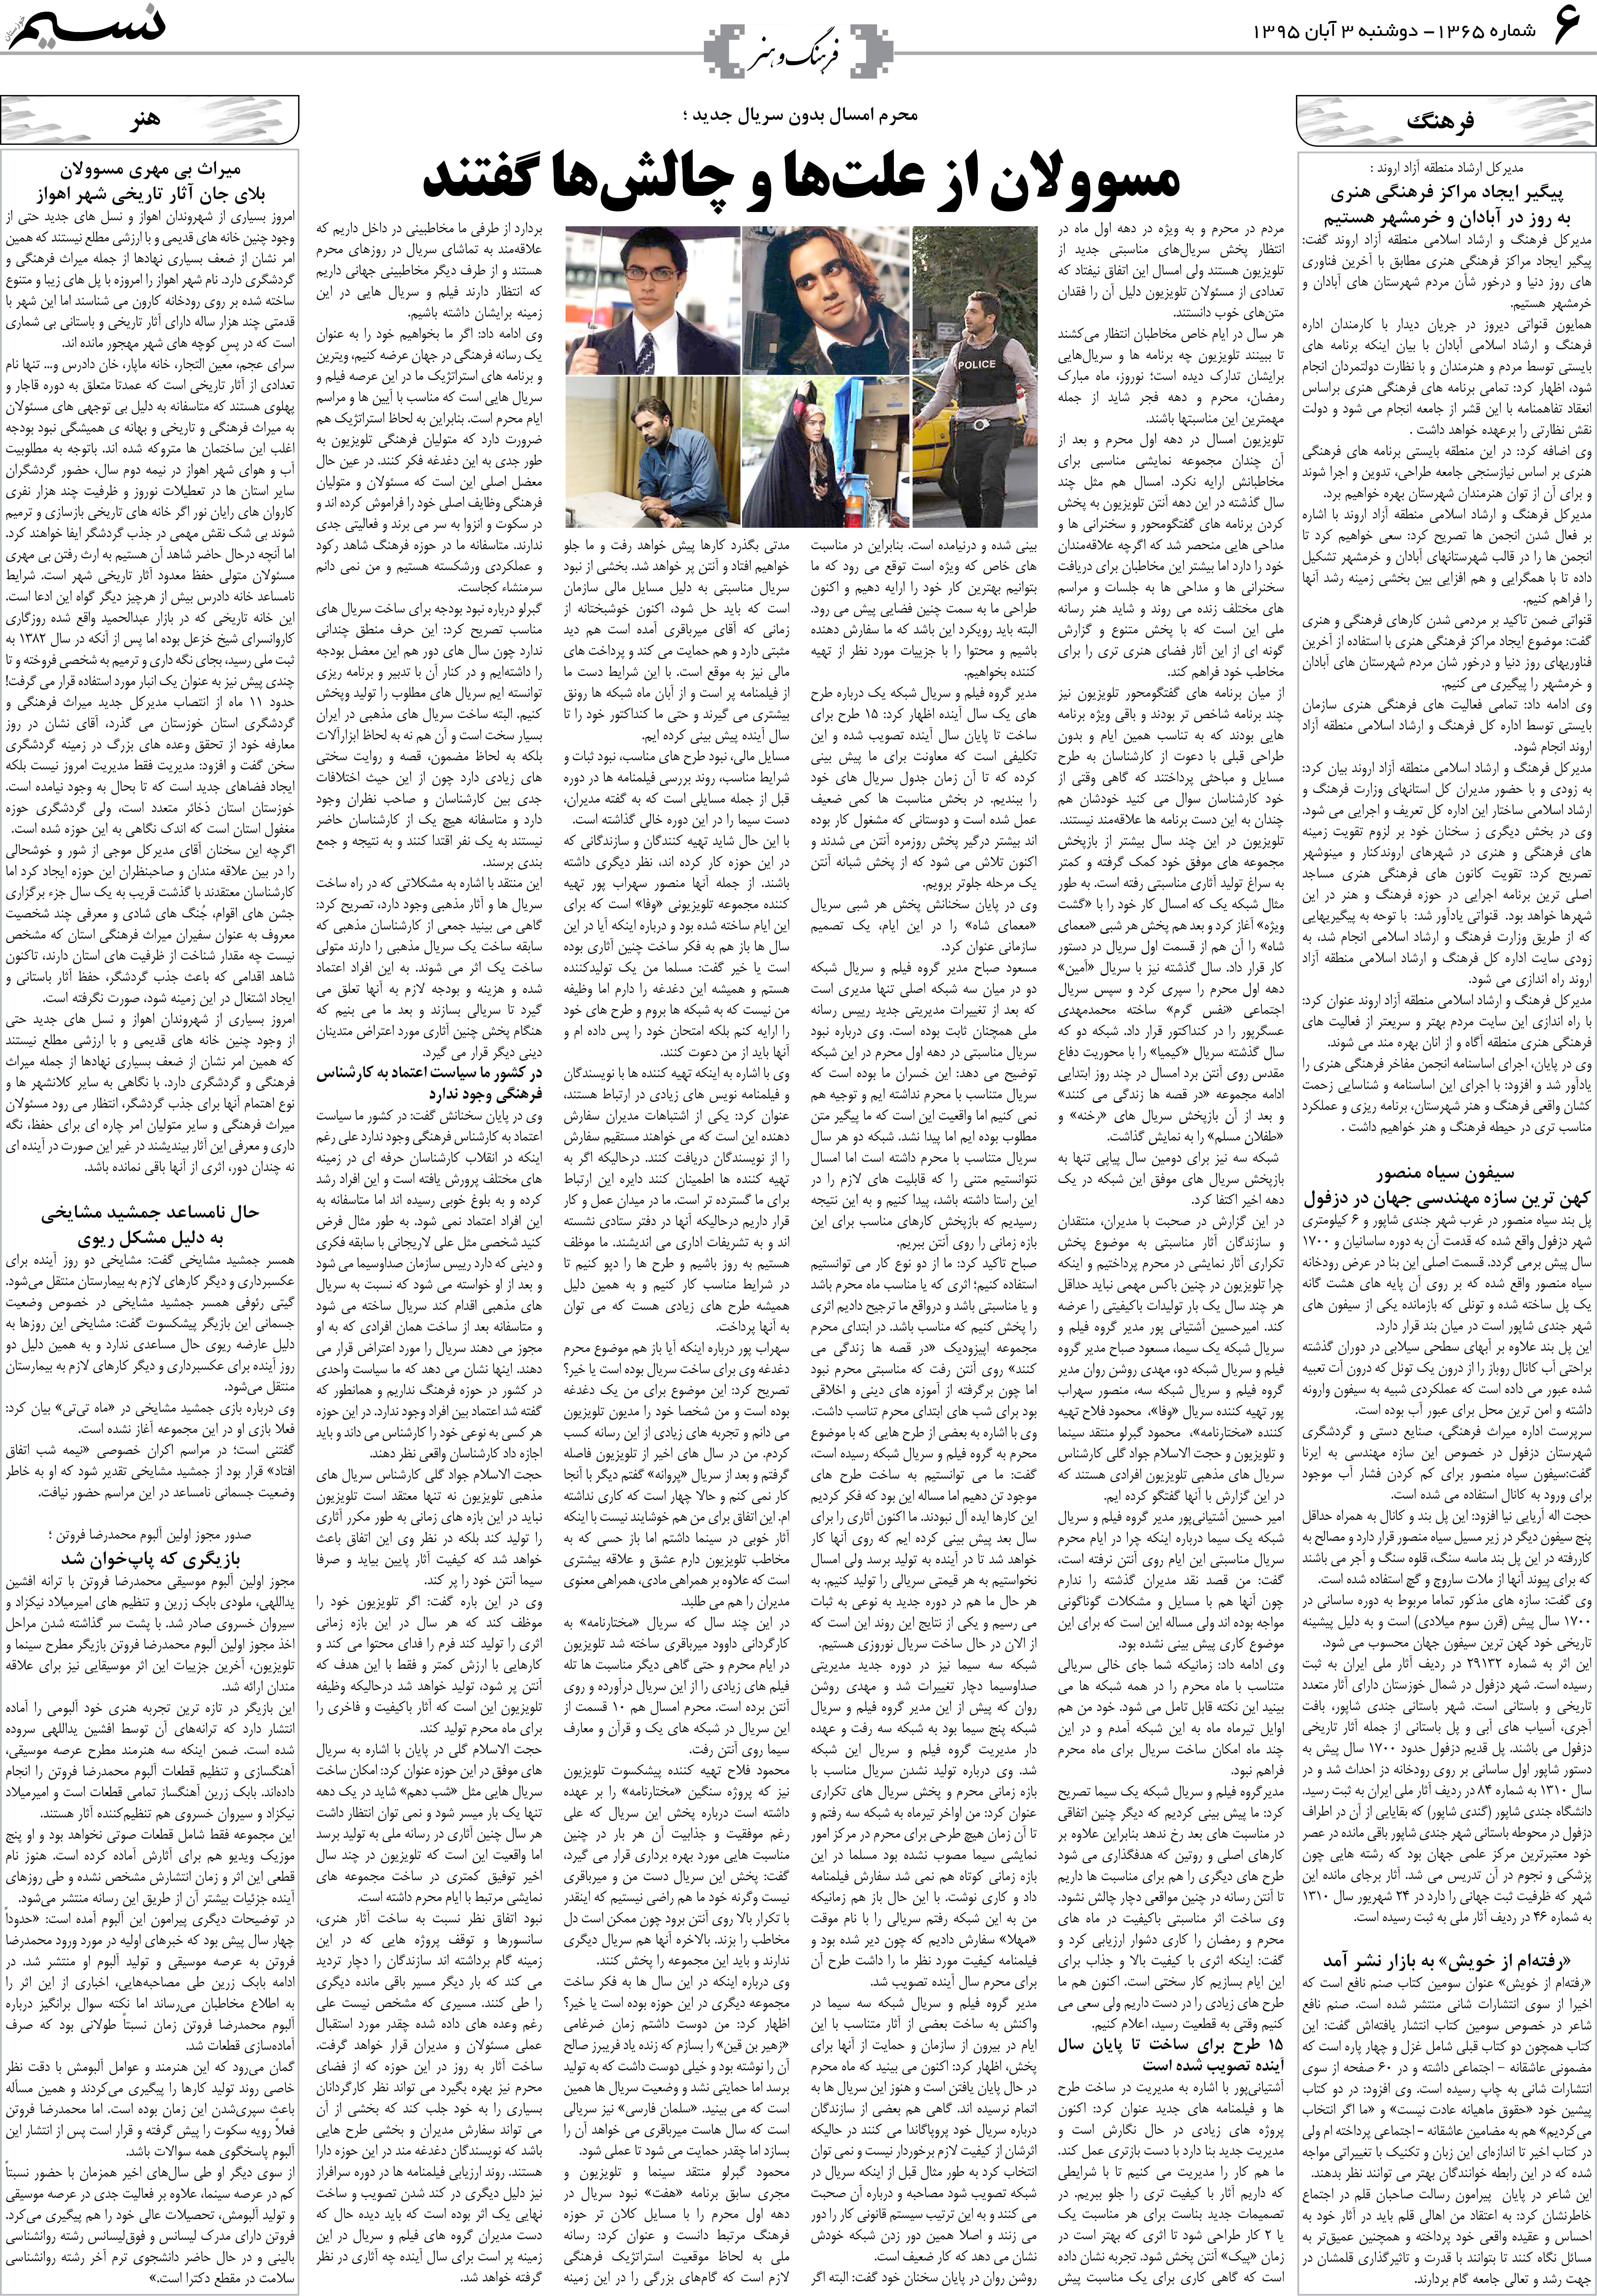 صفحه فرهنگ و هنر روزنامه نسیم شماره 1365